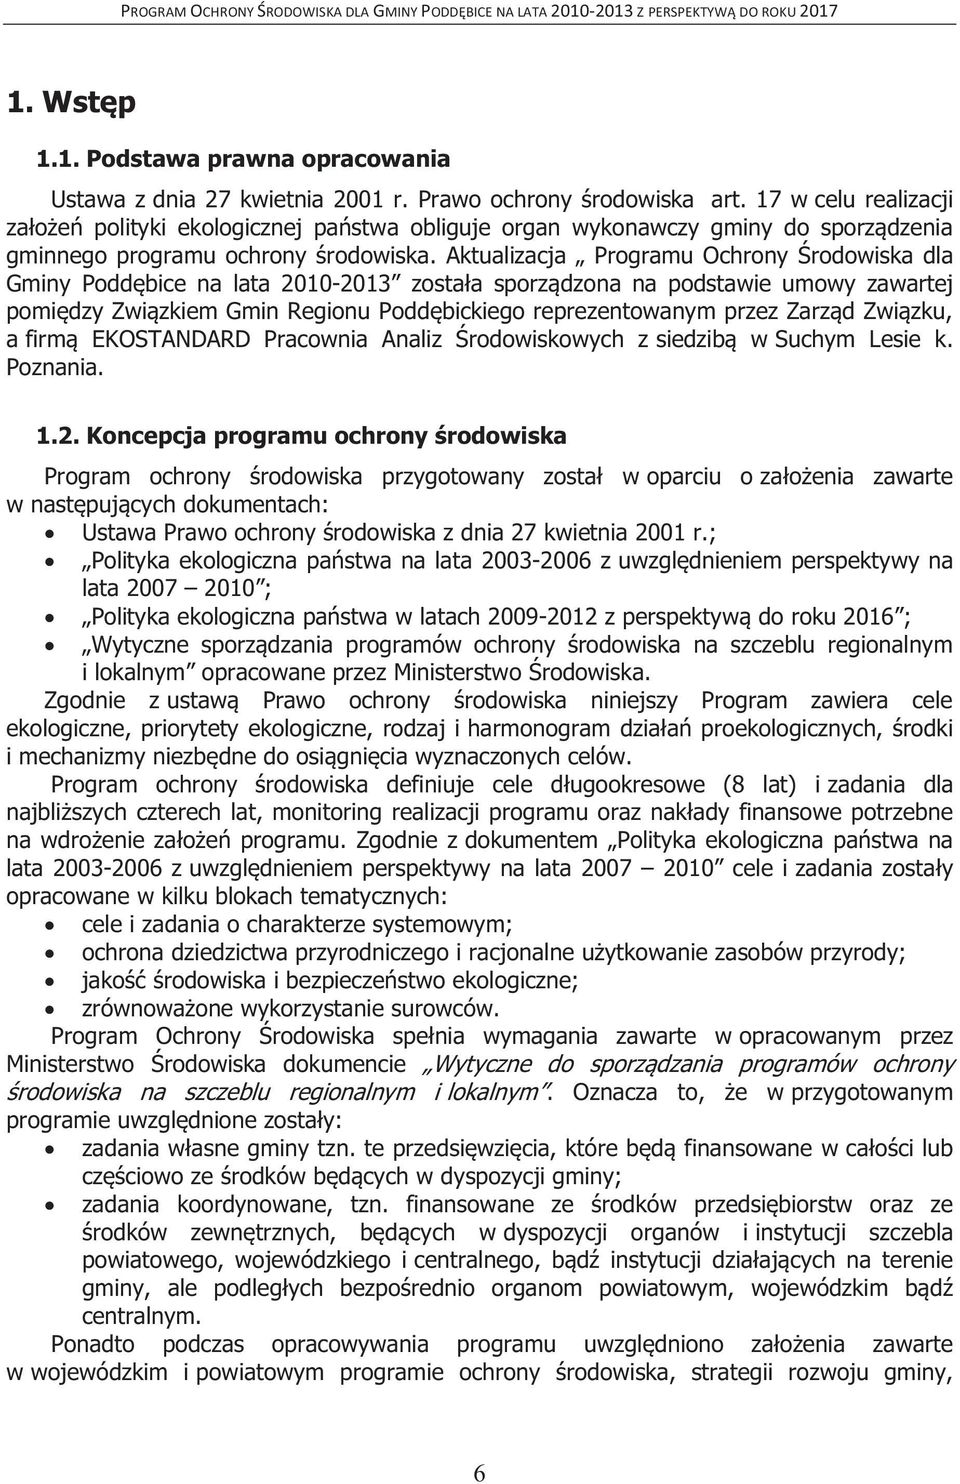 Aktualizacja Programu Ochrony Środowiska dla Gminy Poddębice na lata 2010-2013 została sporządzona na podstawie umowy zawartej pomiędzy Związkiem Gmin Regionu Poddębickiego reprezentowanym przez